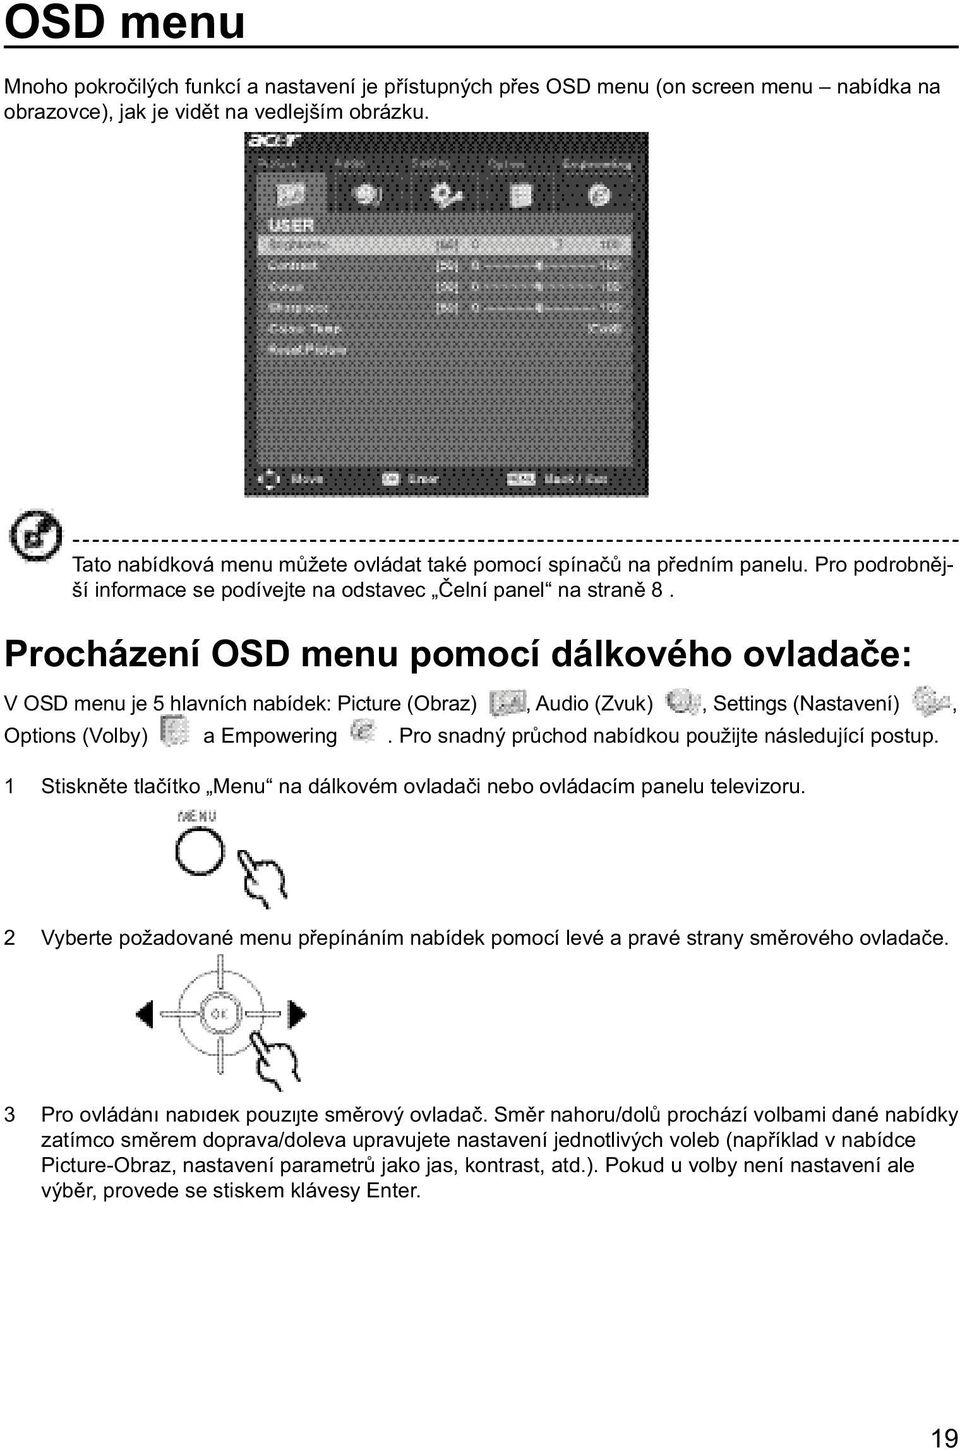 Procházení OSD menu pomocí dálkového ovladače: V OSD menu je 5 hlavních nabídek: Picture (Obraz), Audio (Zvuk), Settings (Nastavení), Options (Volby) a Empowering.